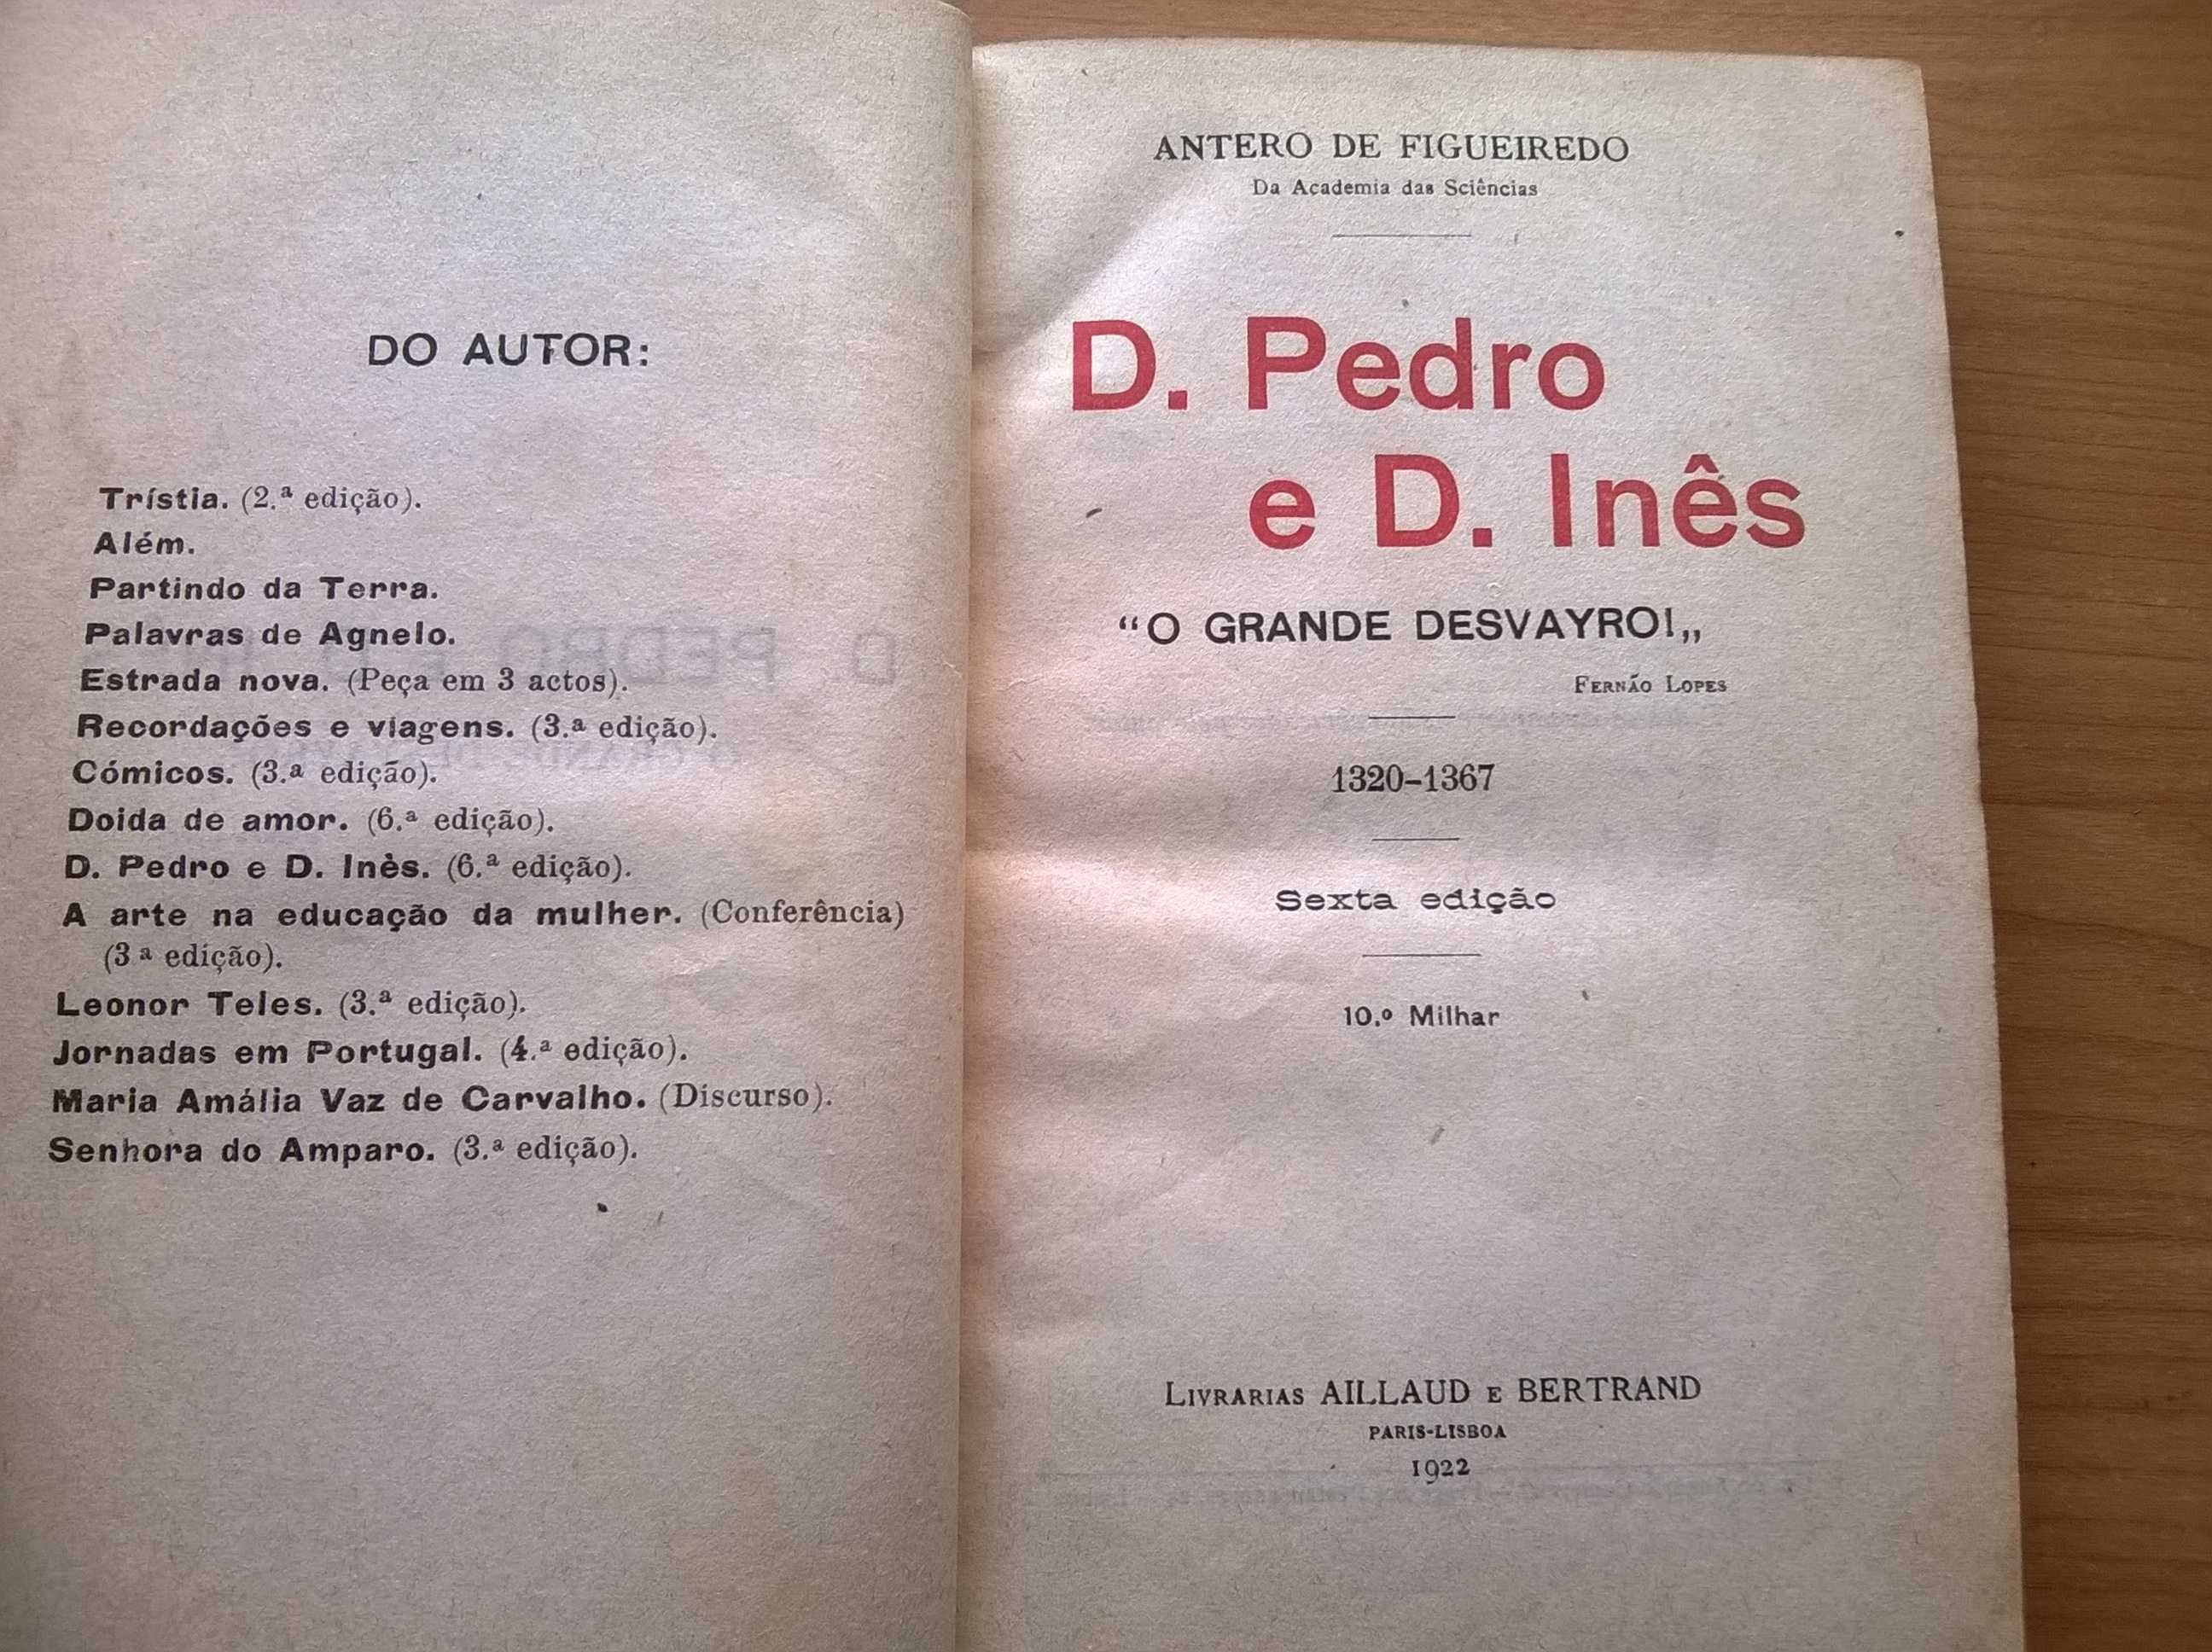 D. Pedro e D. Inês "O Grande Desvayro" 1320/1367 -Antero de Figueiredo